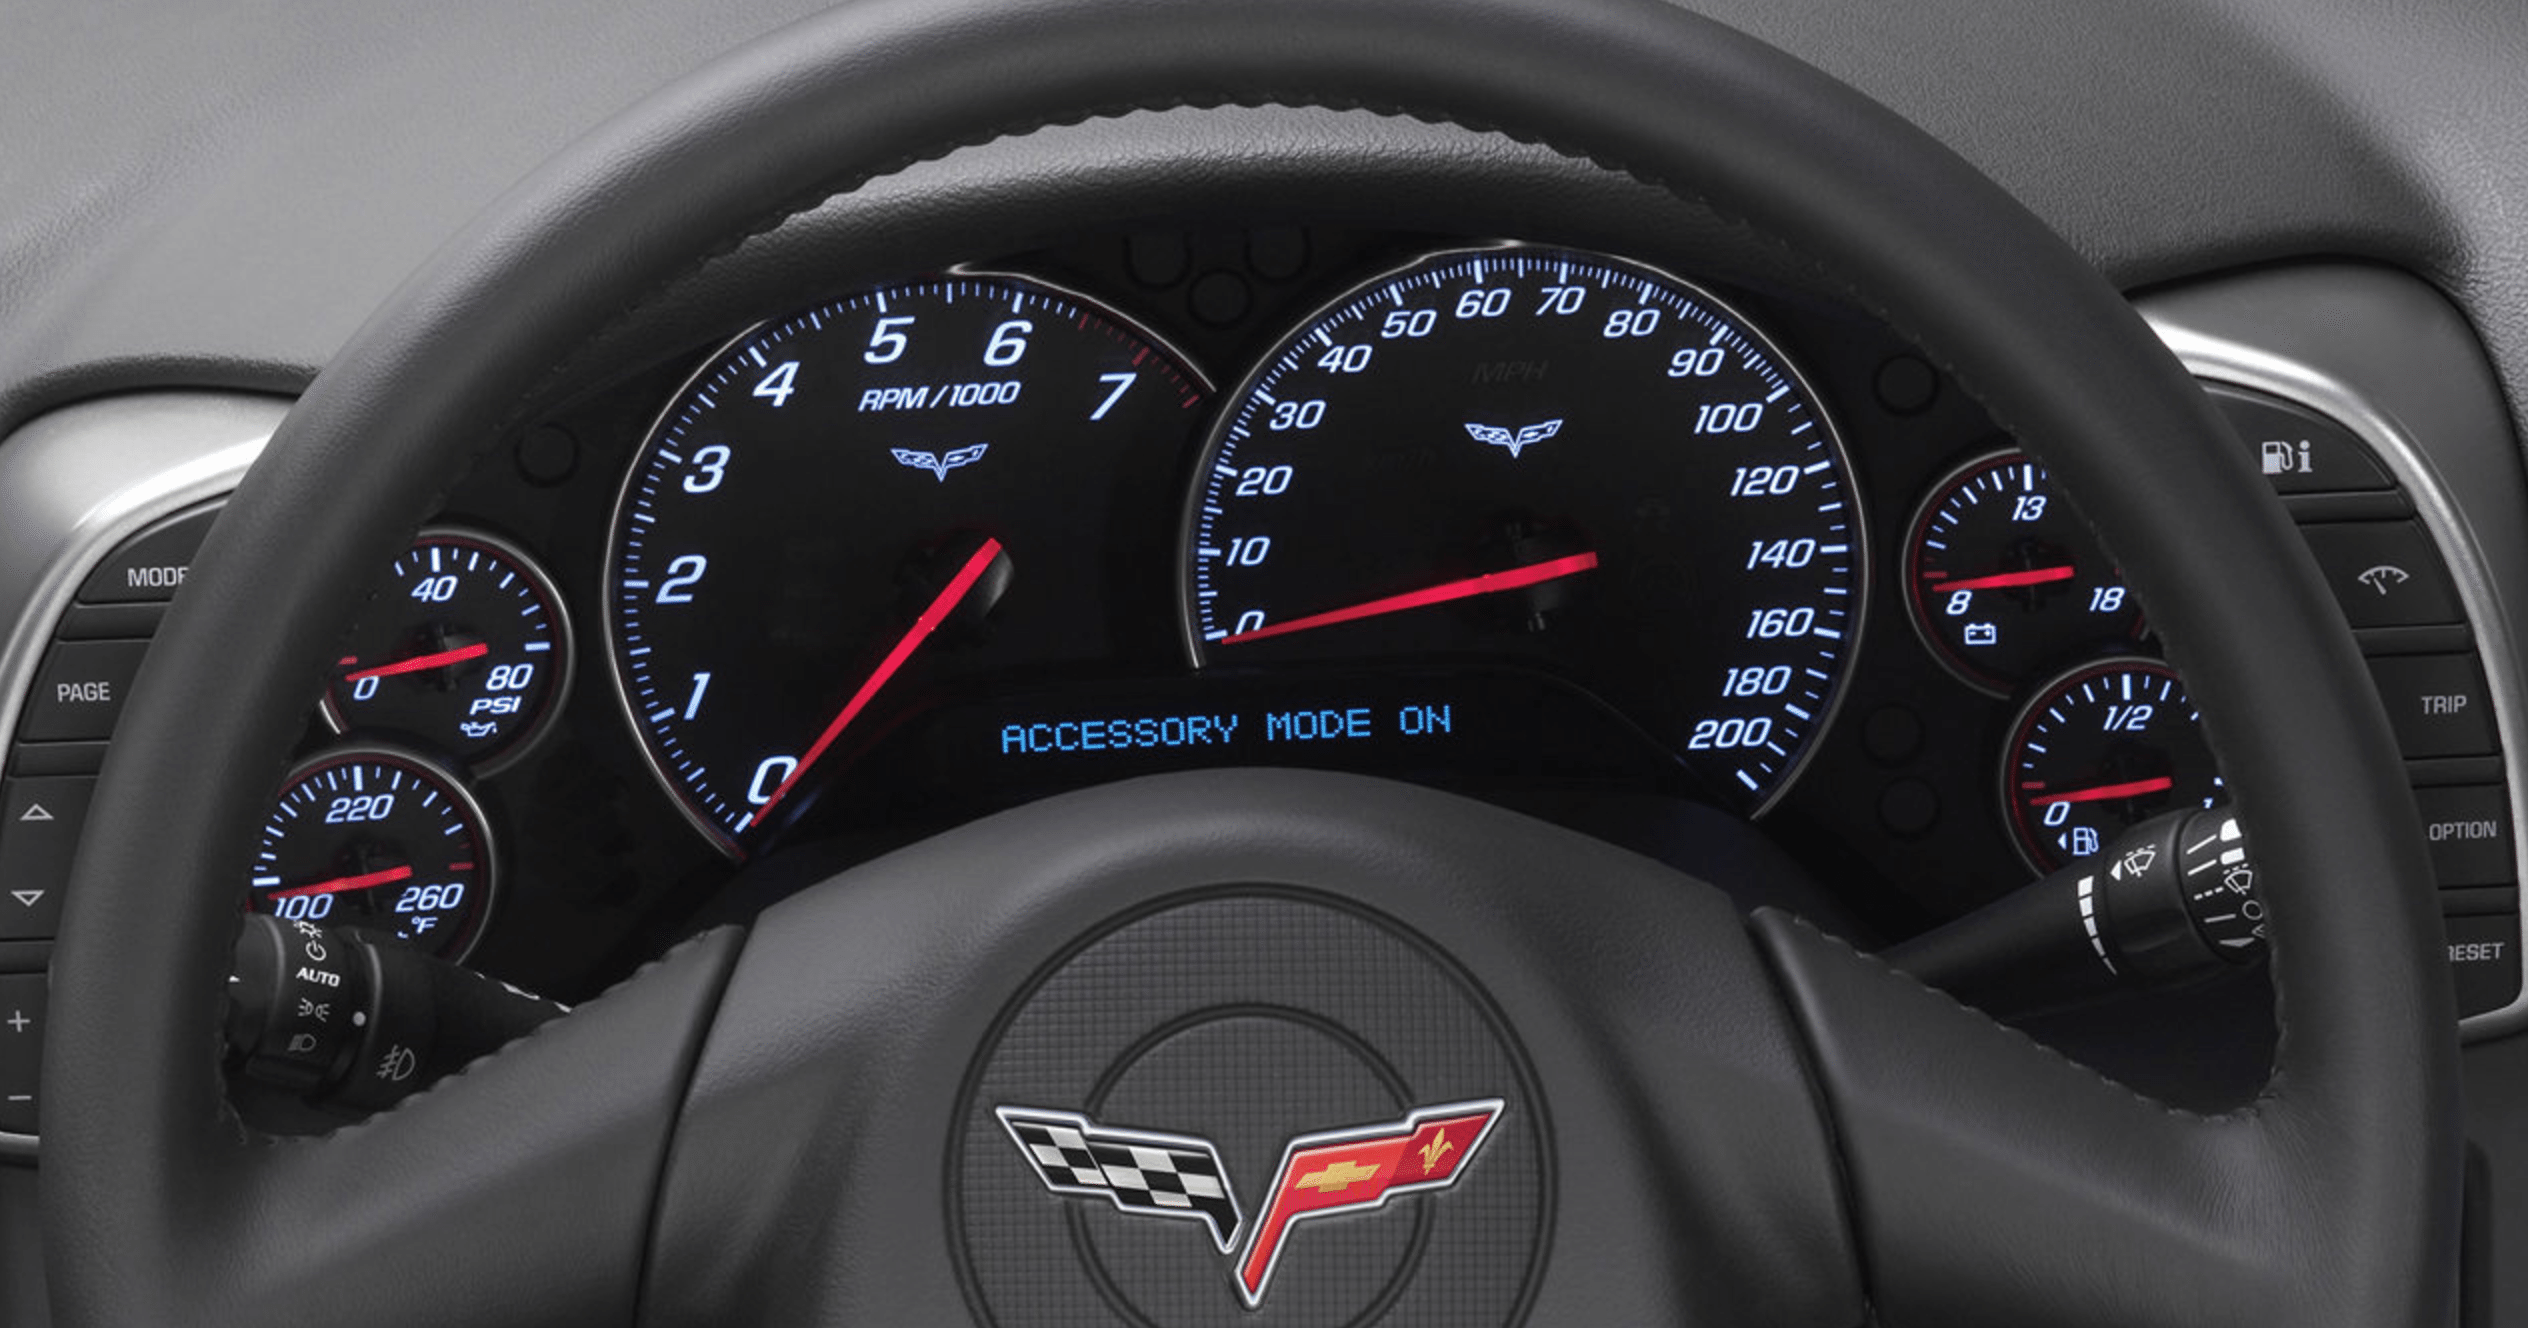 2005 Corvette Interior